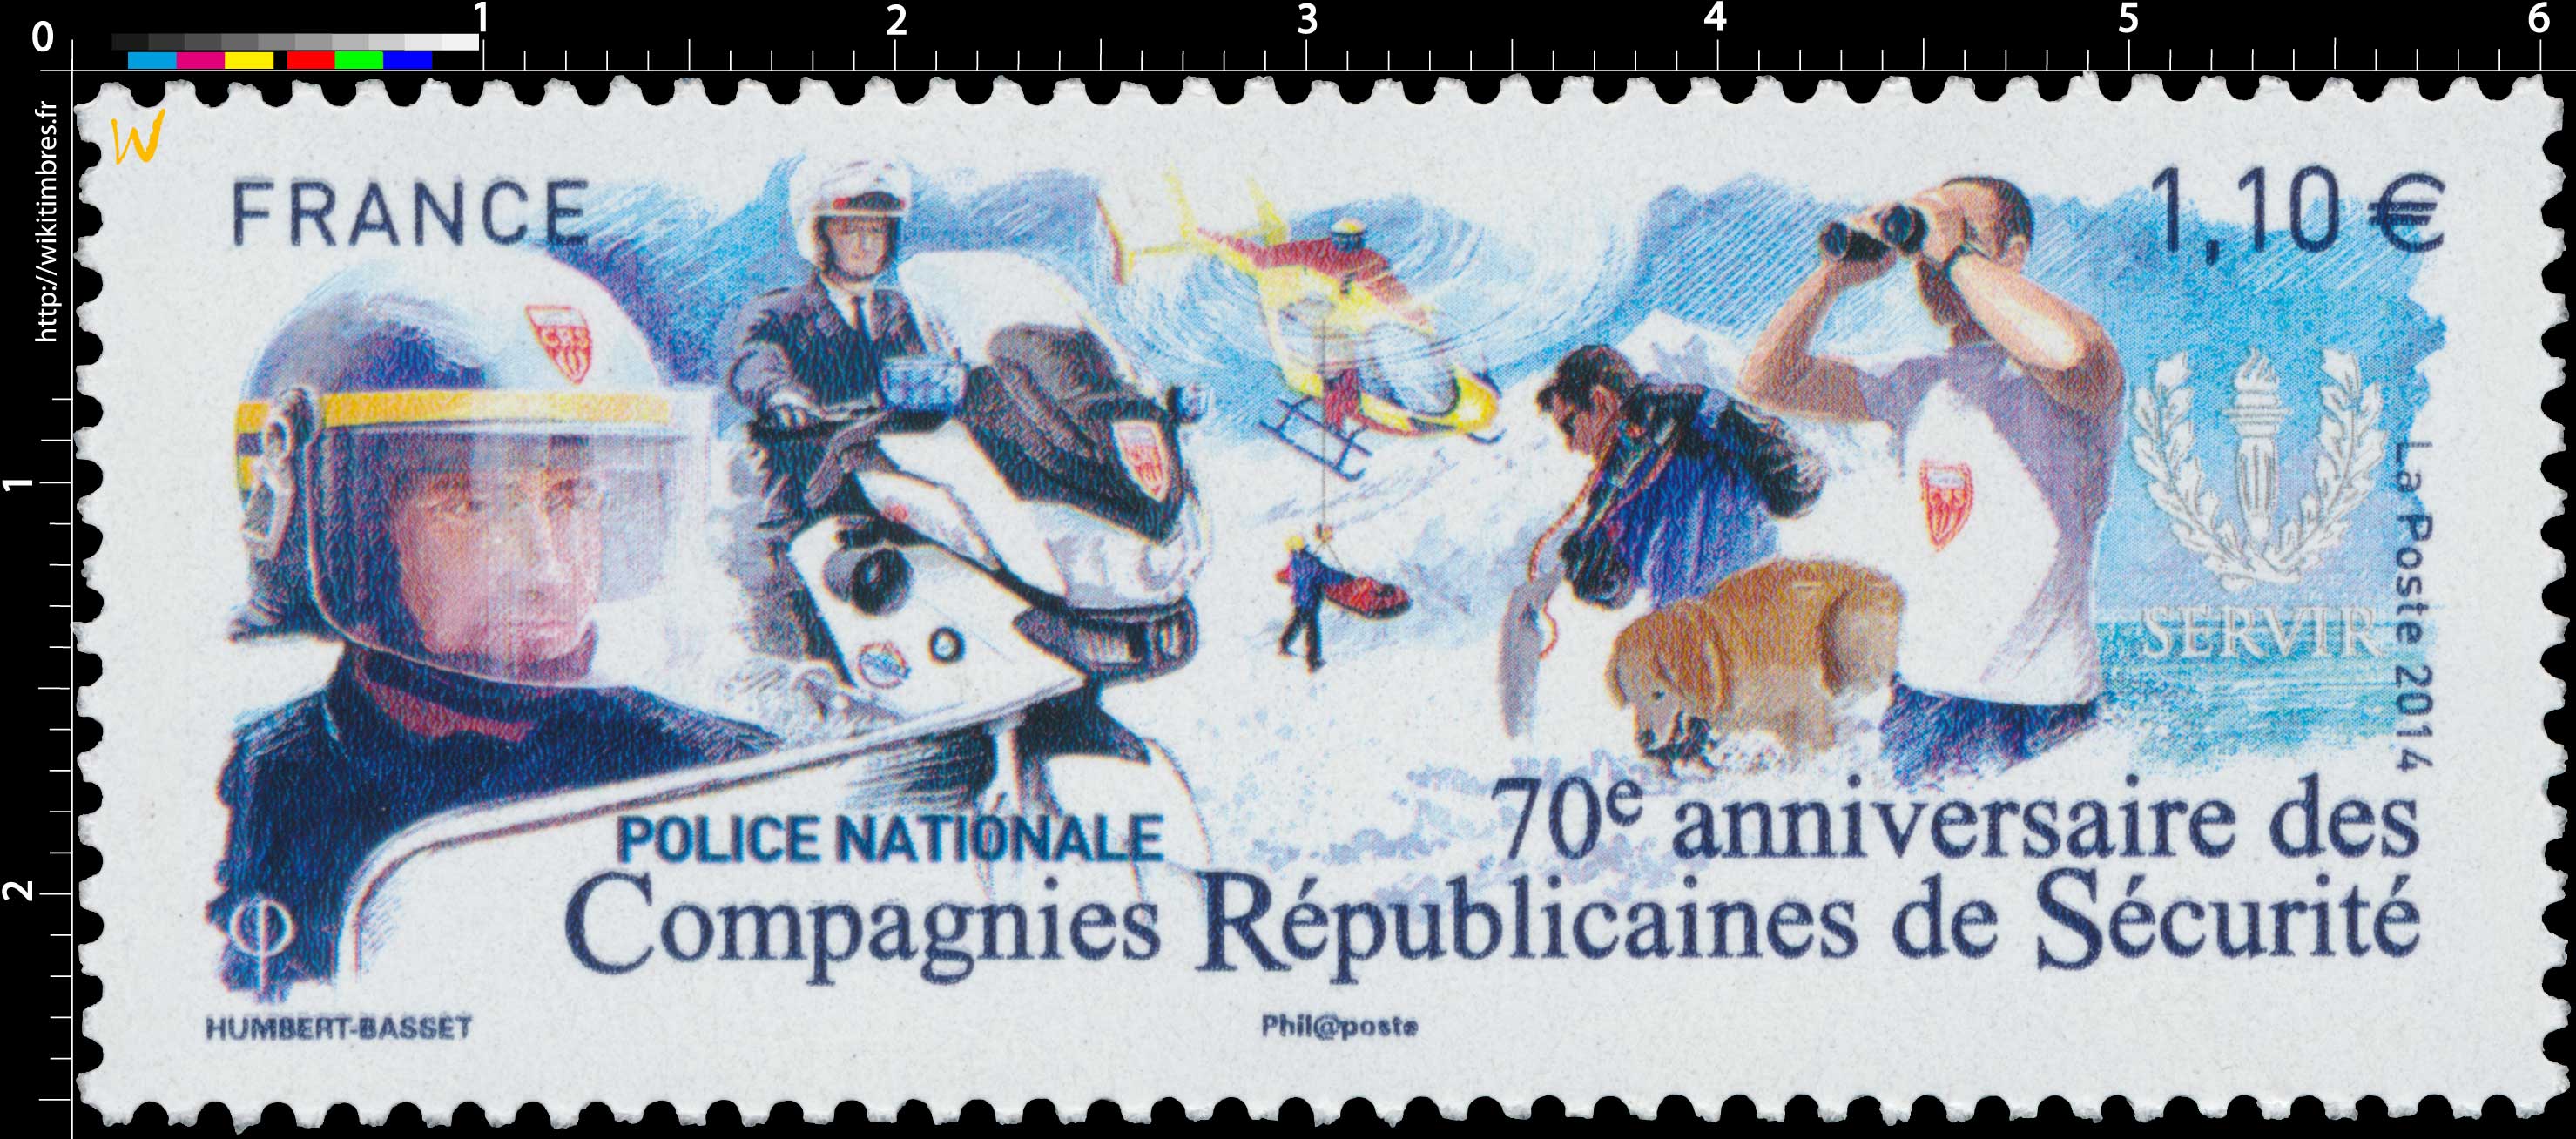 2014 70e anniversaire des Compagnies Républicaines de Sécurité POLICE NATIONALE